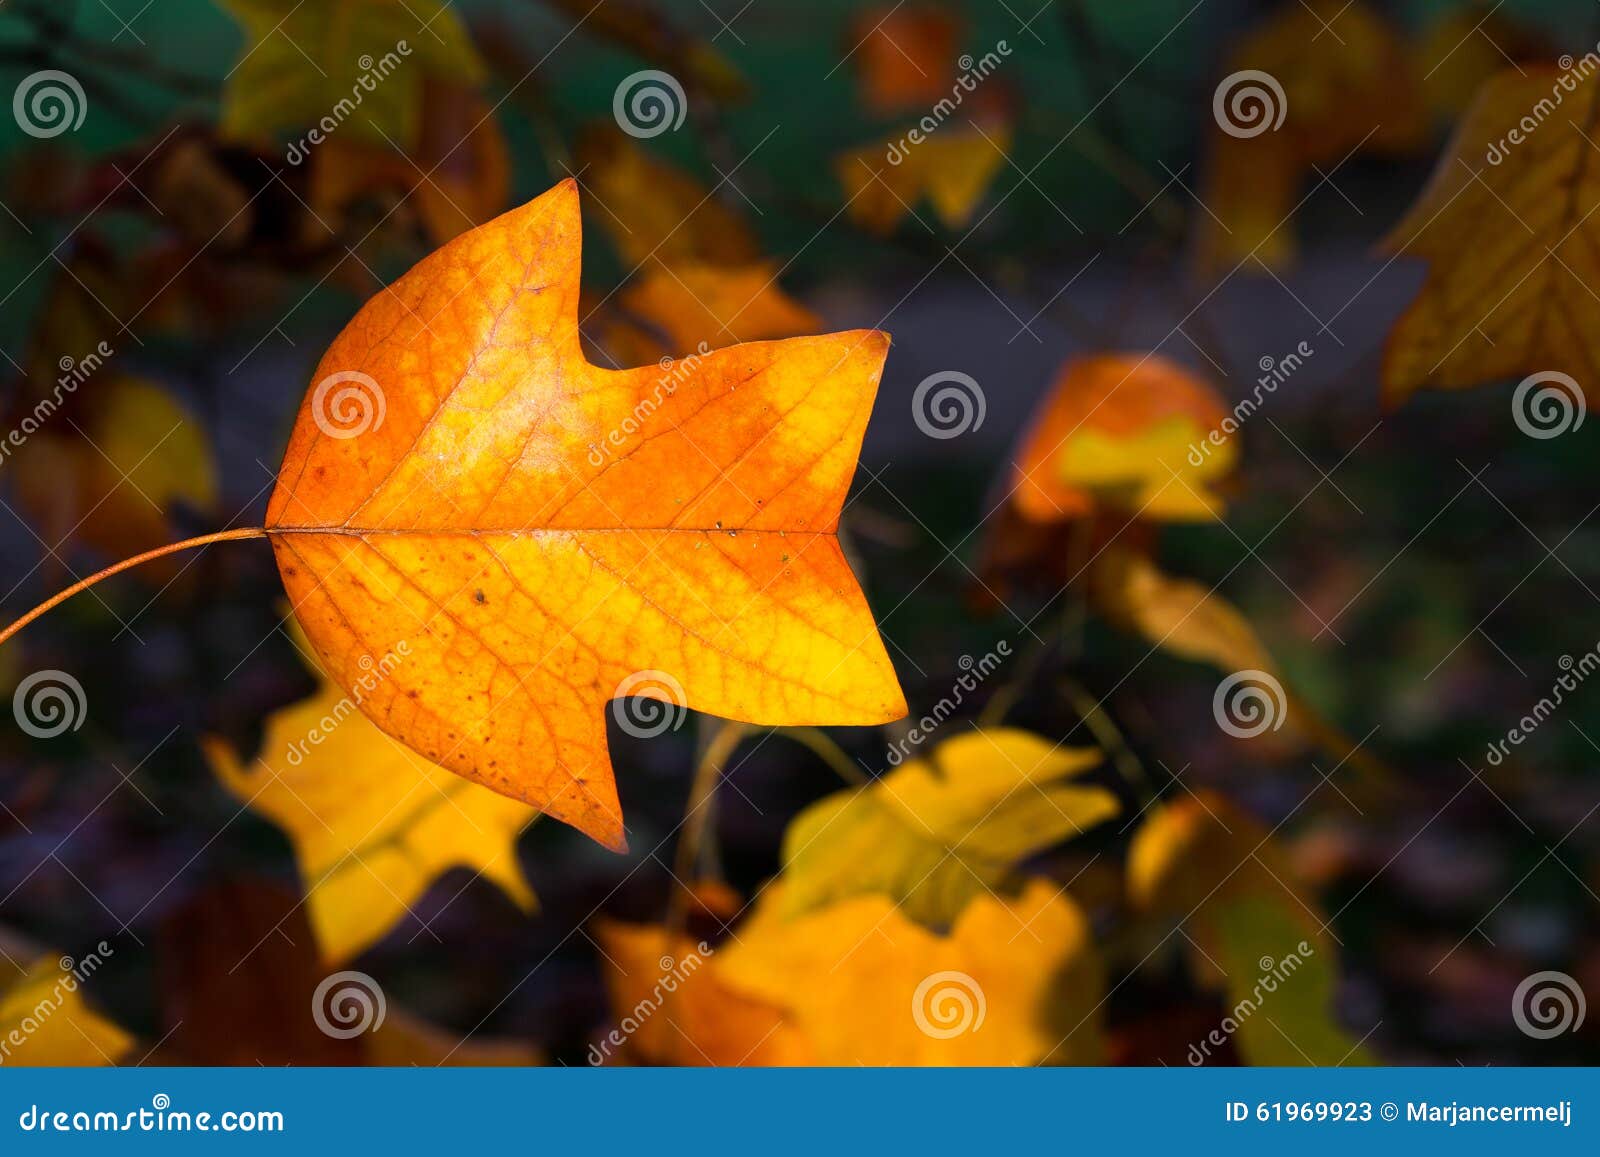 Fondo variopinto del fogliame di Autumn Leaves Sunny Fall Landscape. Foglie di autunno gialle, arancio e rosse il giorno soleggiato nei parchi dell'università di Oxford, paesaggio dell'autunno con fogliame variopinto, bello fondo